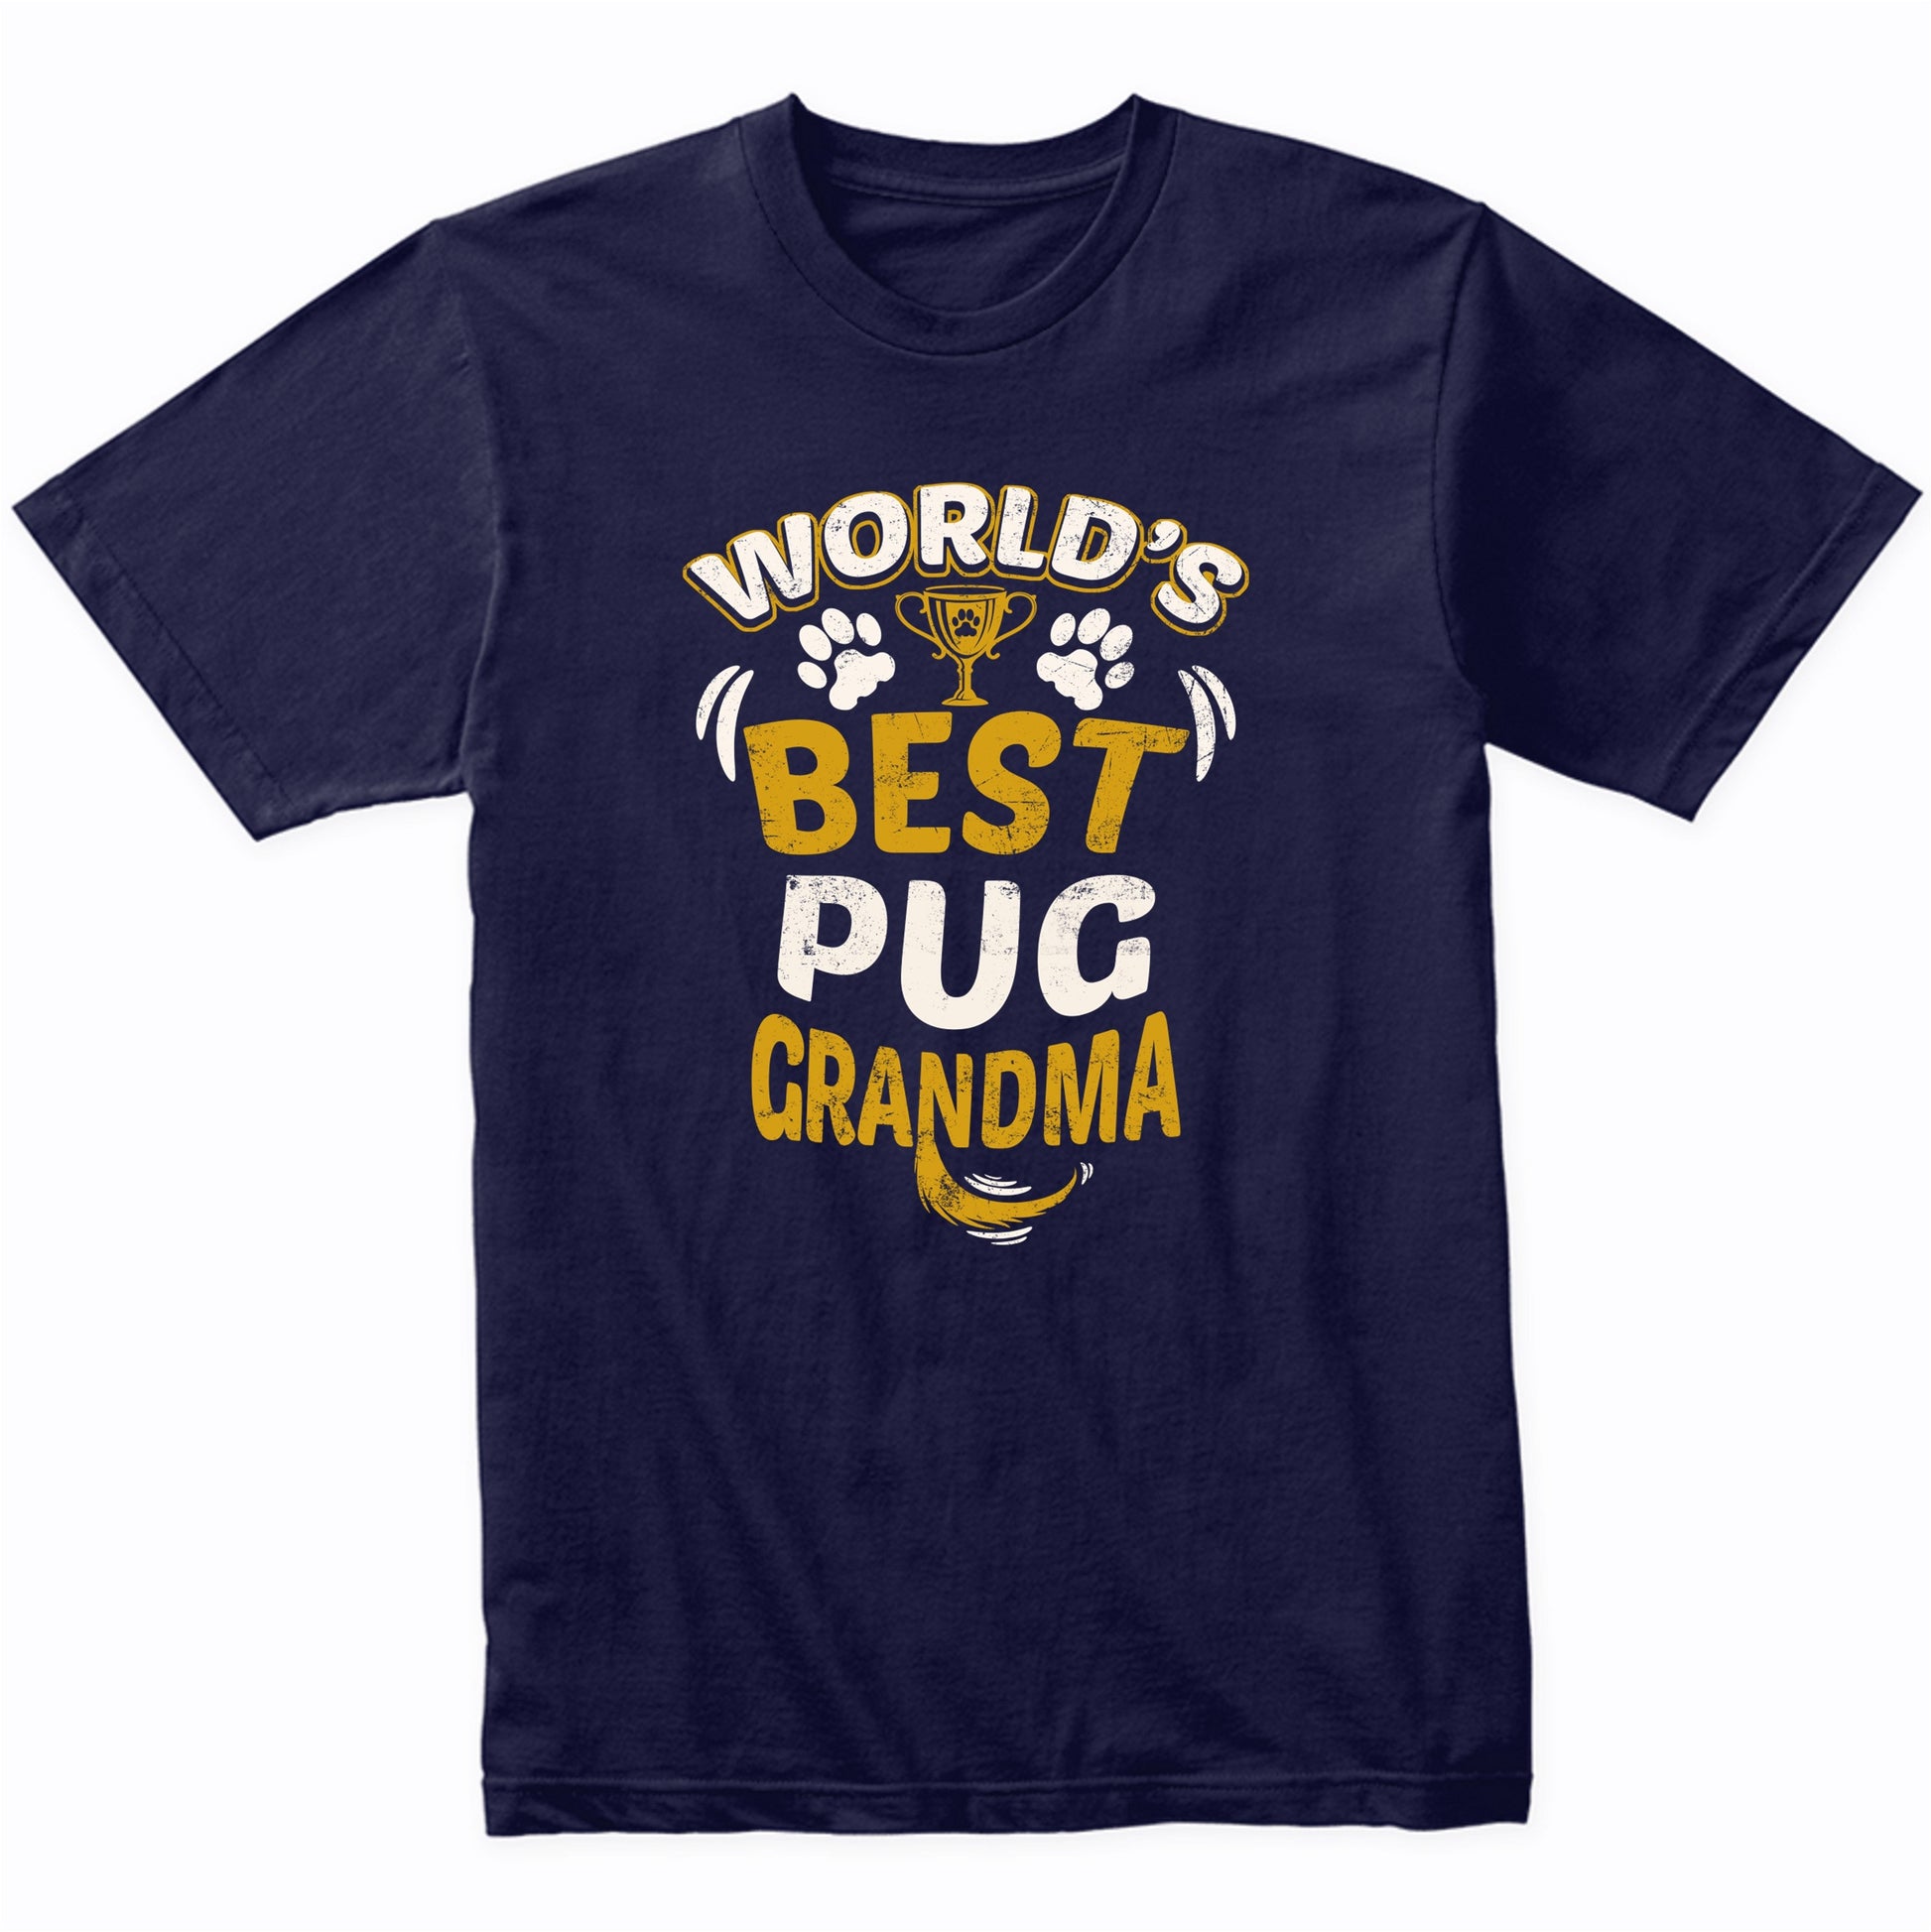 World's Best Pug Grandma Graphic T-Shirt